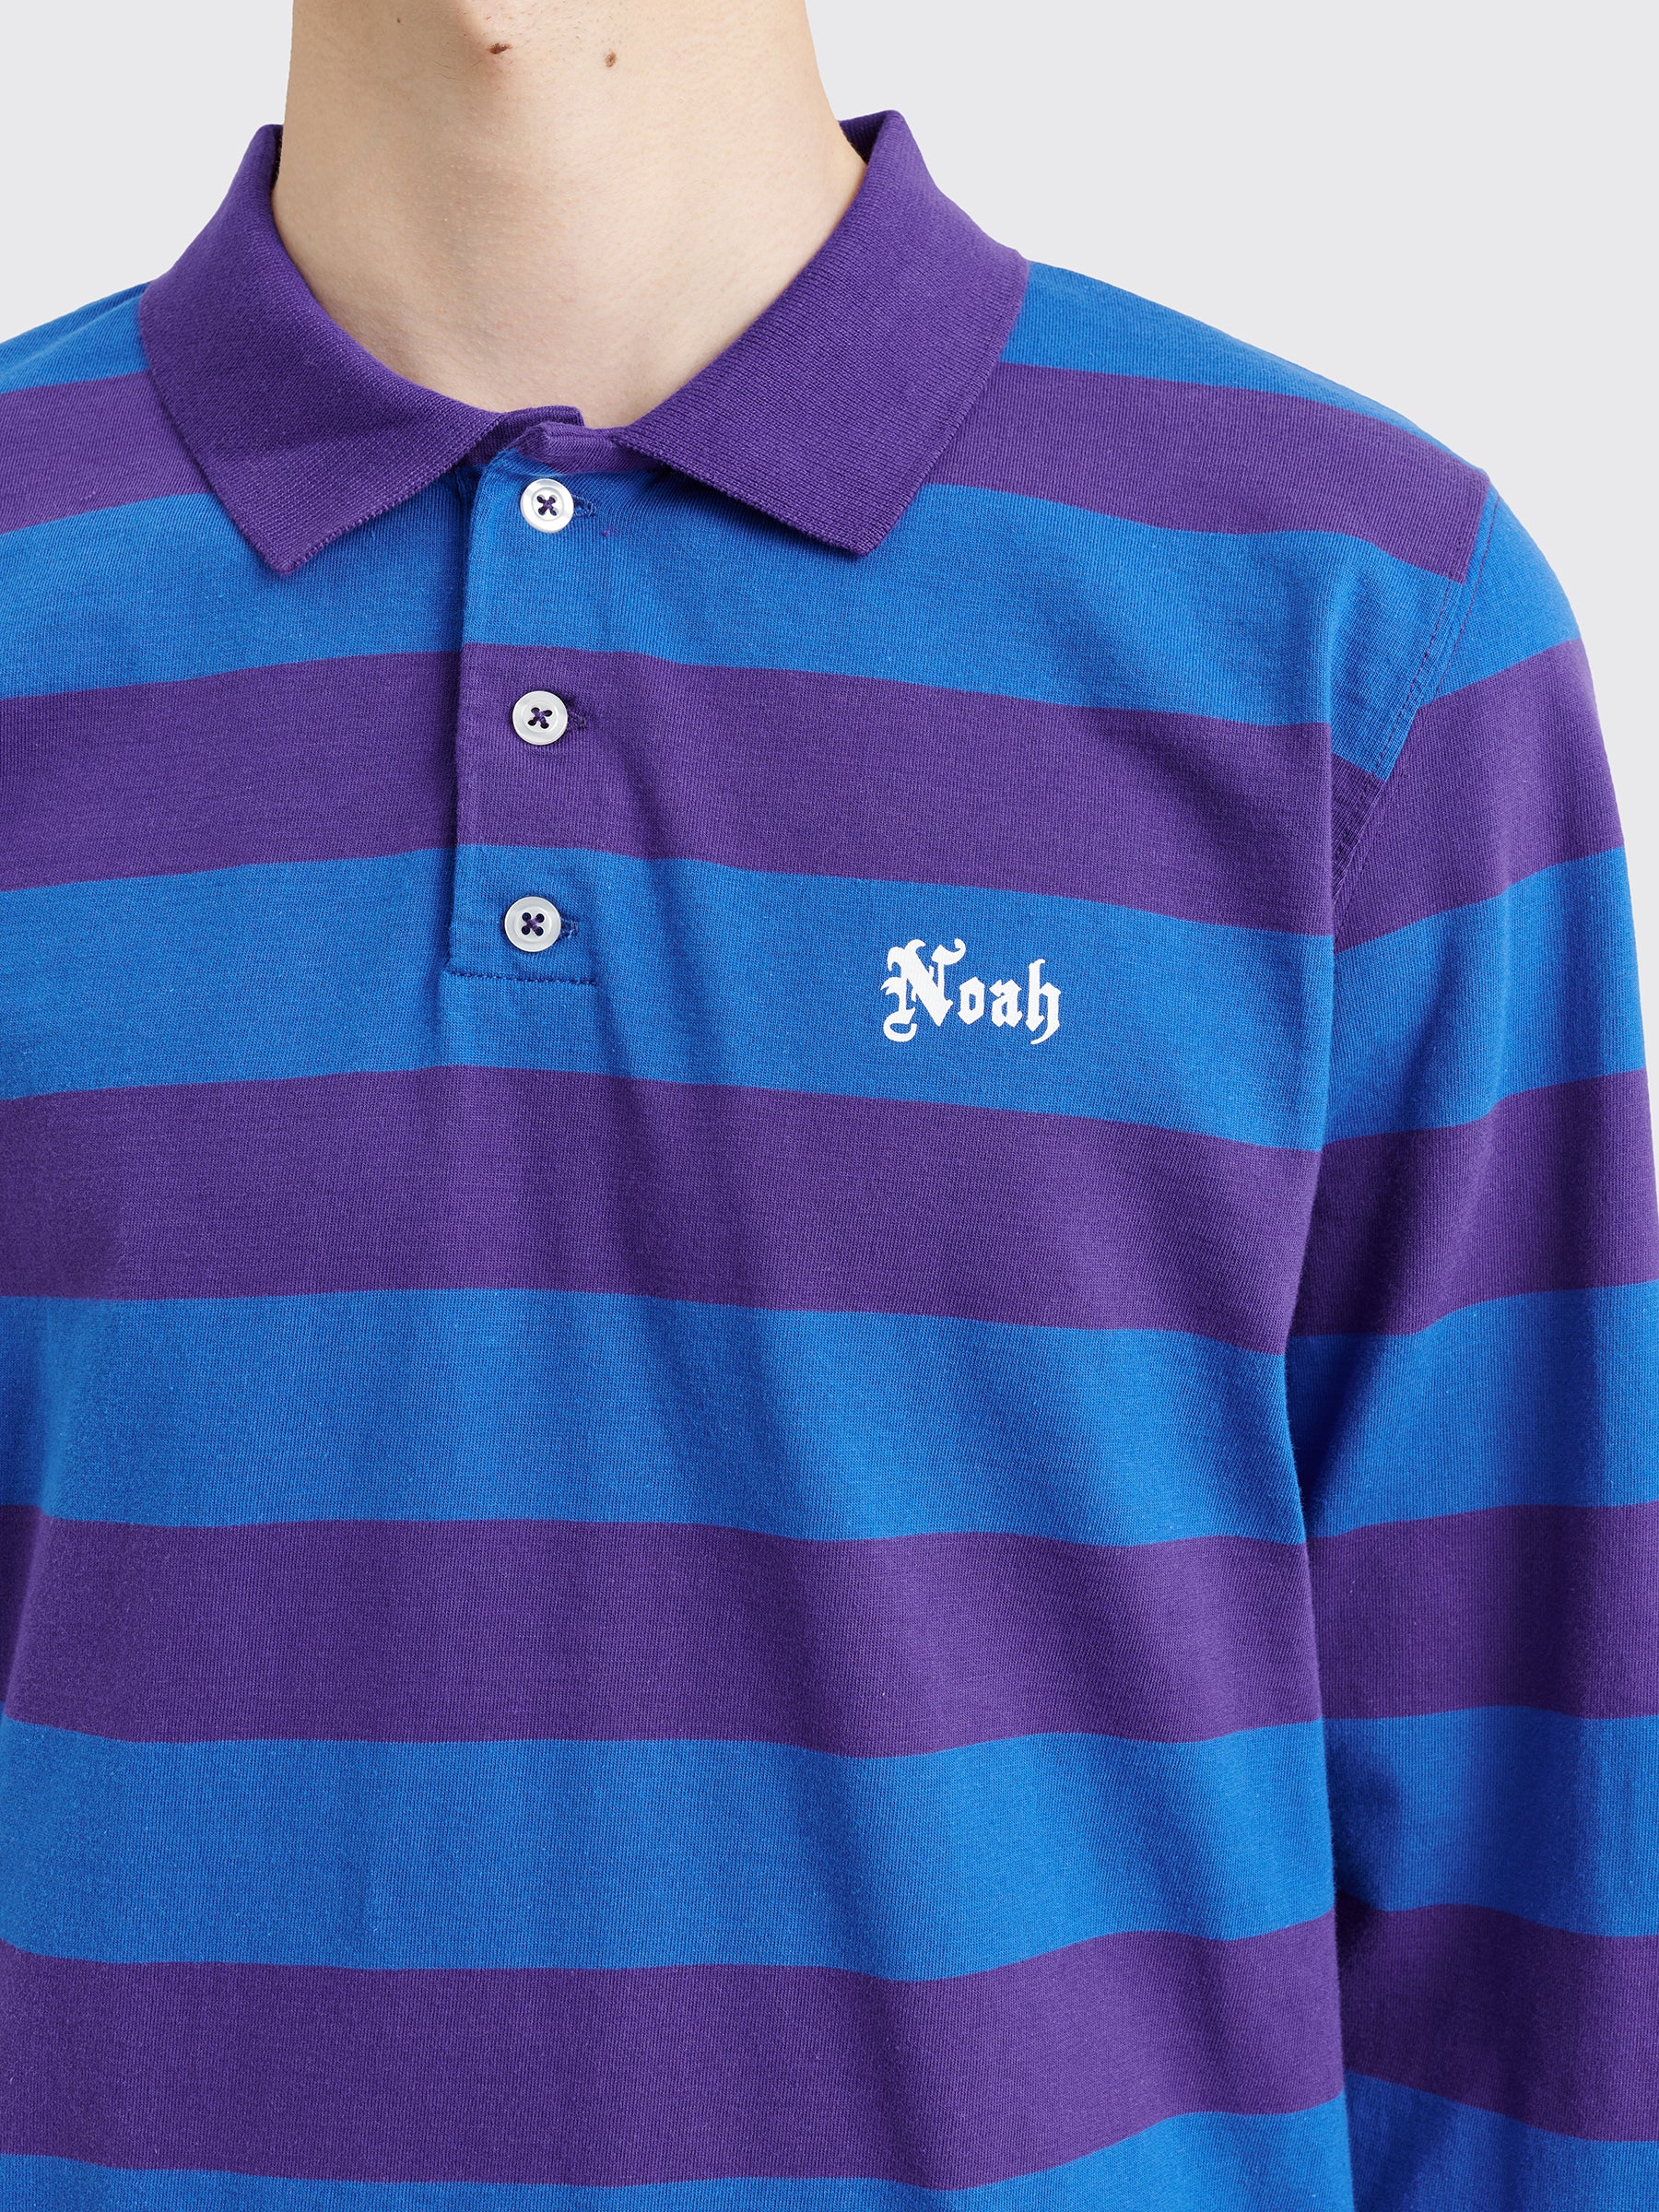 Noah Jersey Long Sleeve Polo Purple / Royal